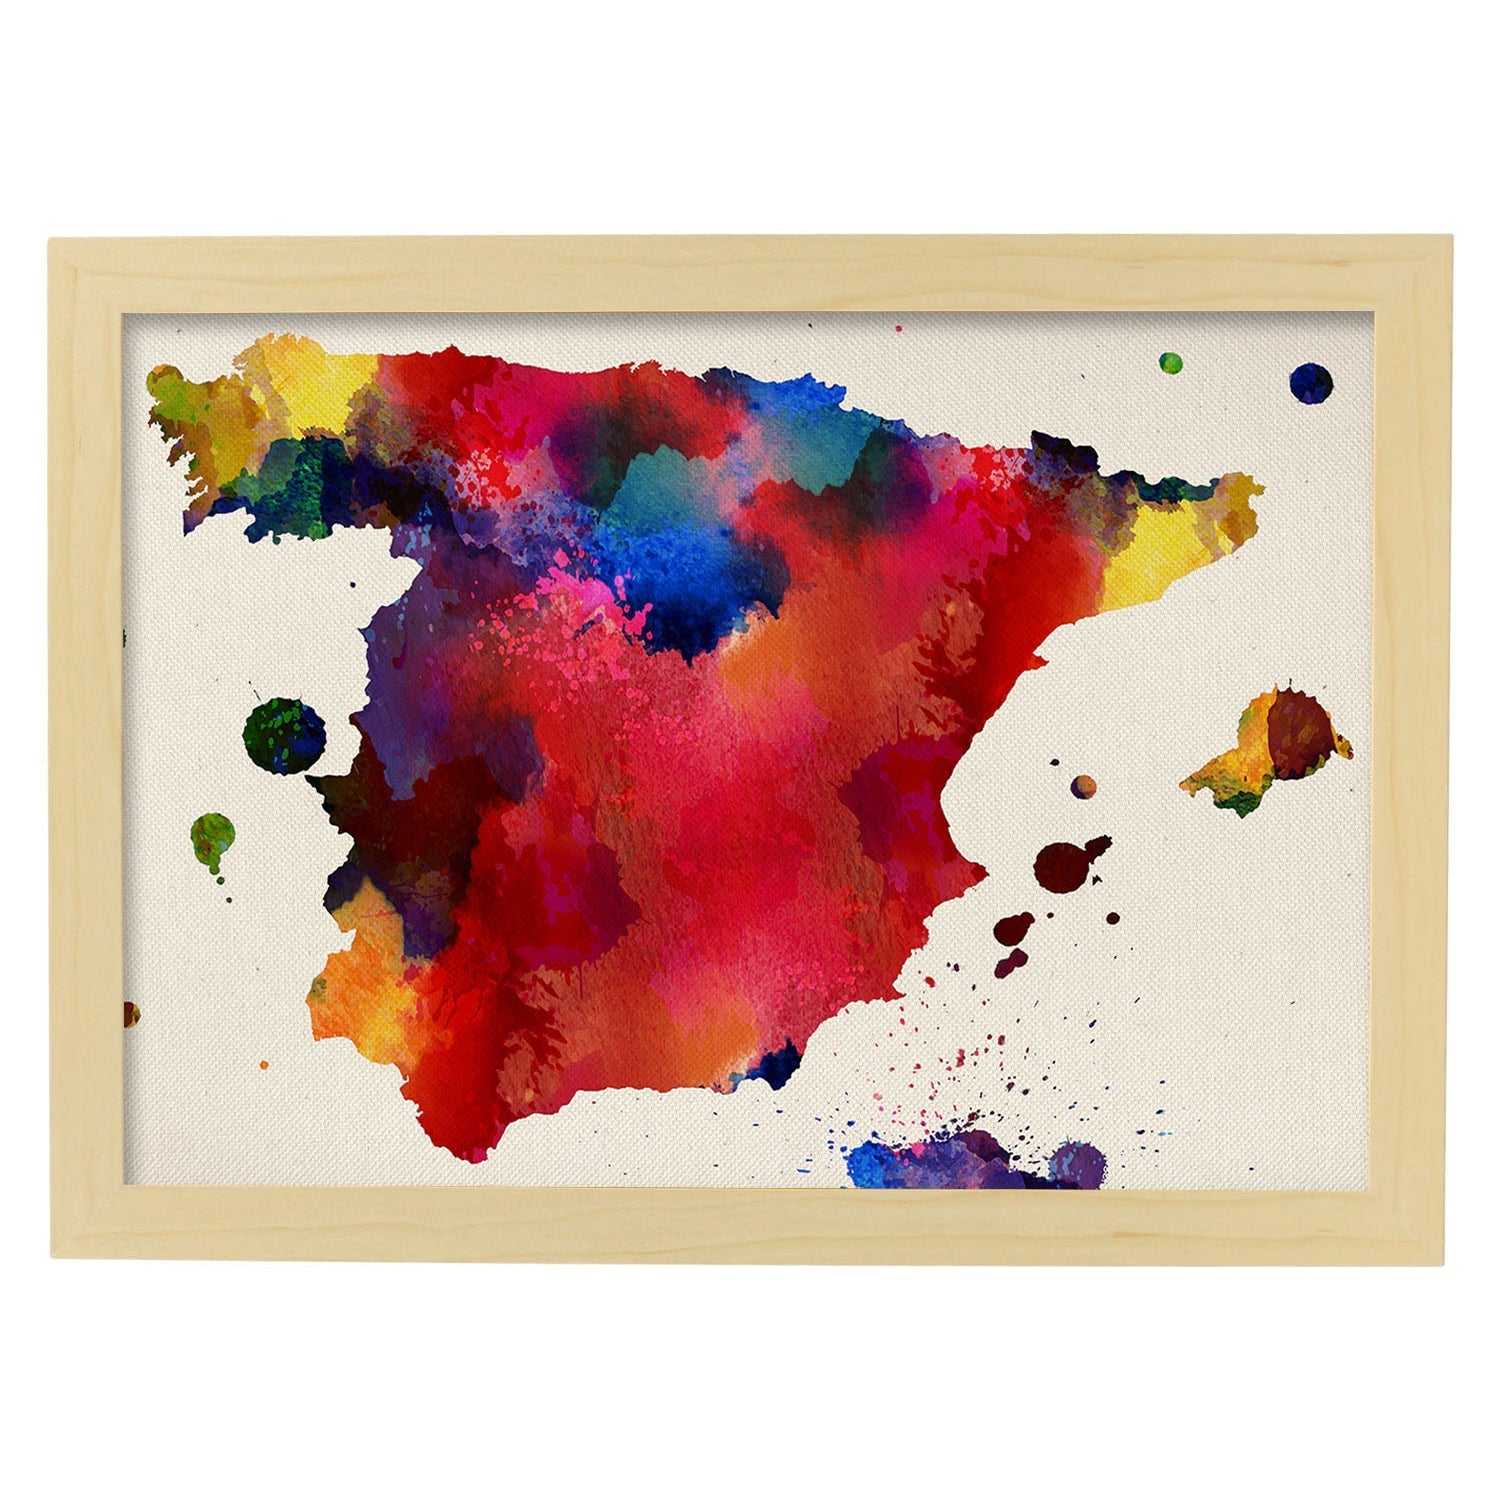 Poster con mapa de Valencia - España. Láminas de ciudades de España co –  Nacnic Estudio SL